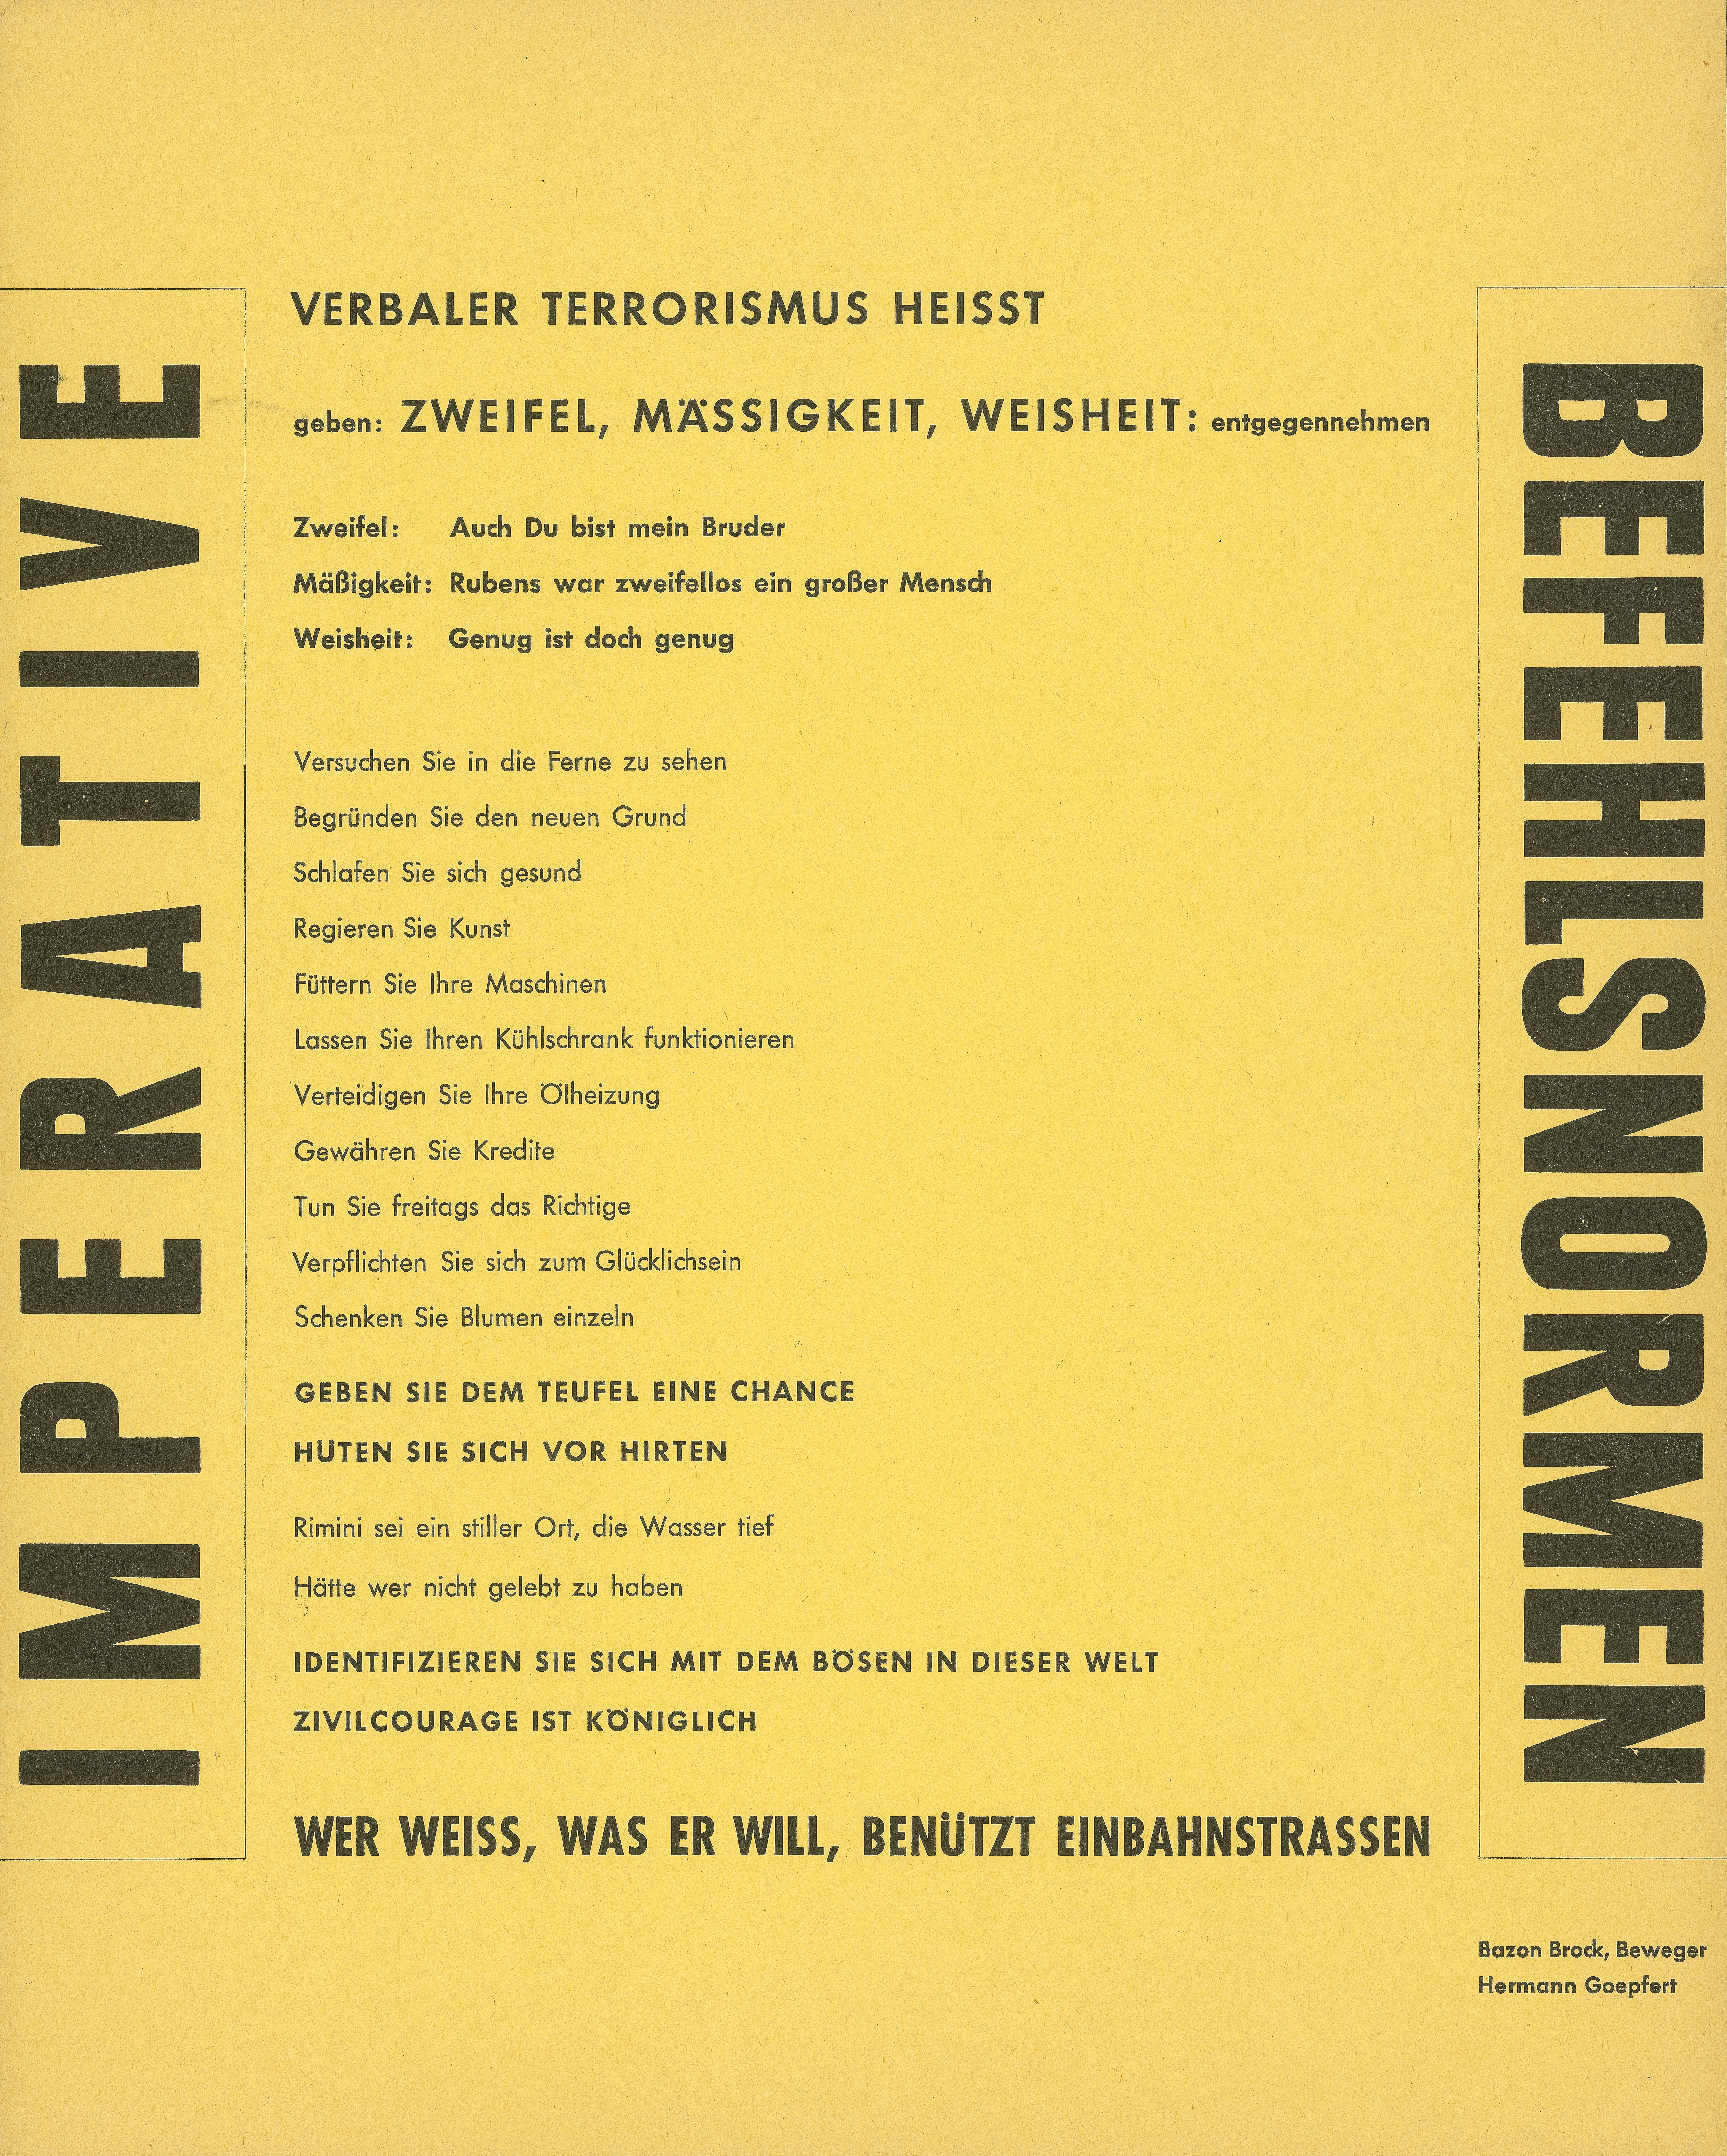 Imperative Befehlsnormen, Bild: Aktion "Donnerstagsmanifest" von Bazon Brock und Hermann Goepfert, Frankfurt am Main 1962..